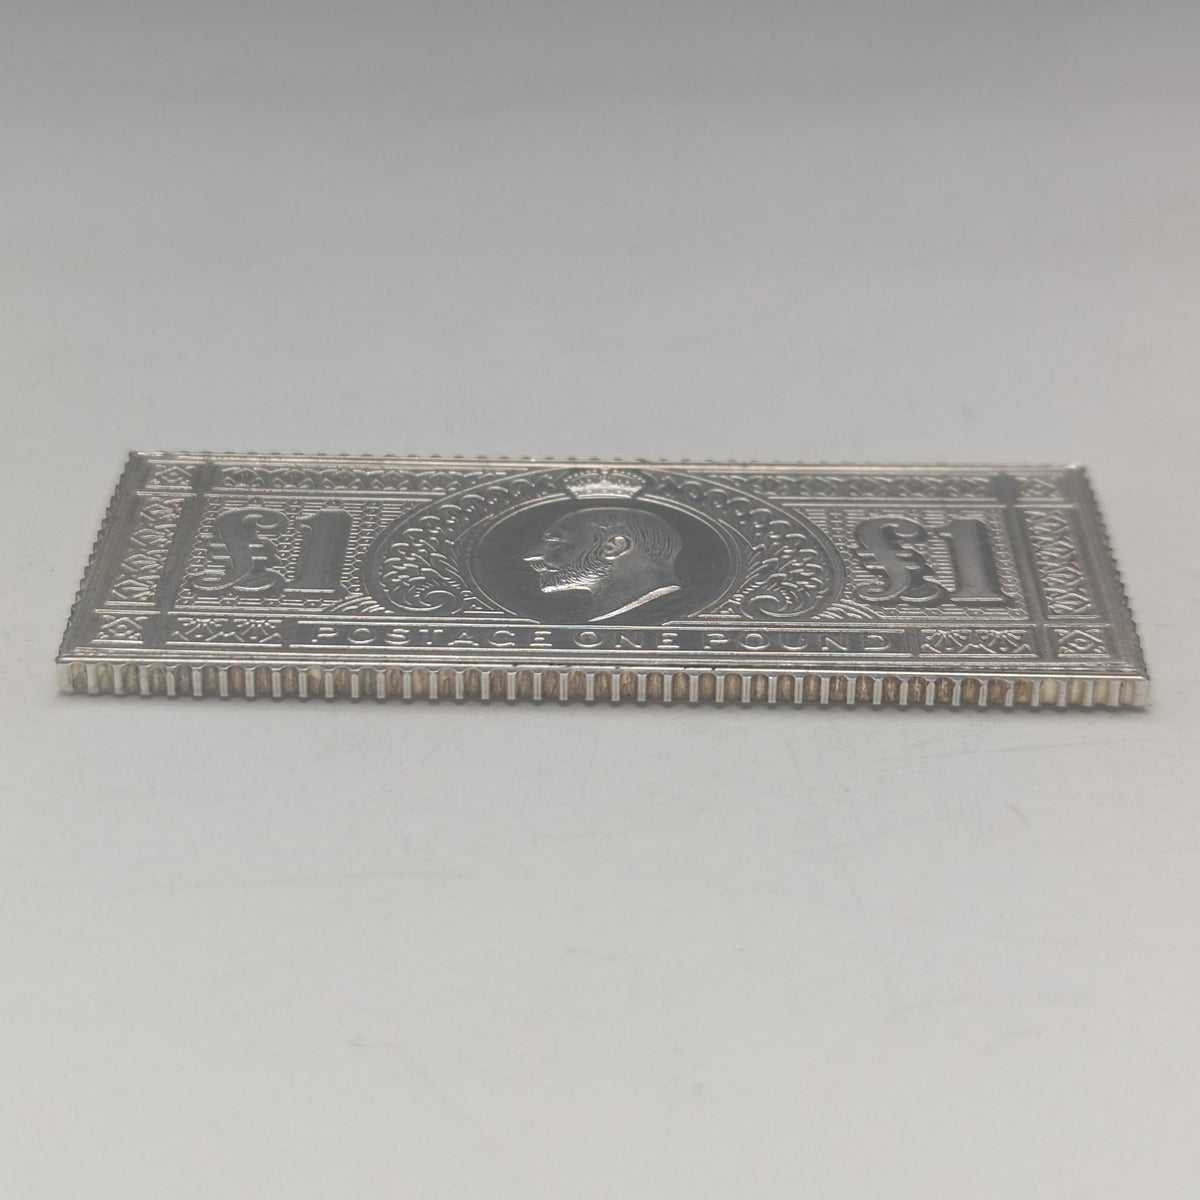 1977年 エリザベスⅡ世 戴冠25周年ジュビリー 純銀製 1ポンド切手レプリカ 32g